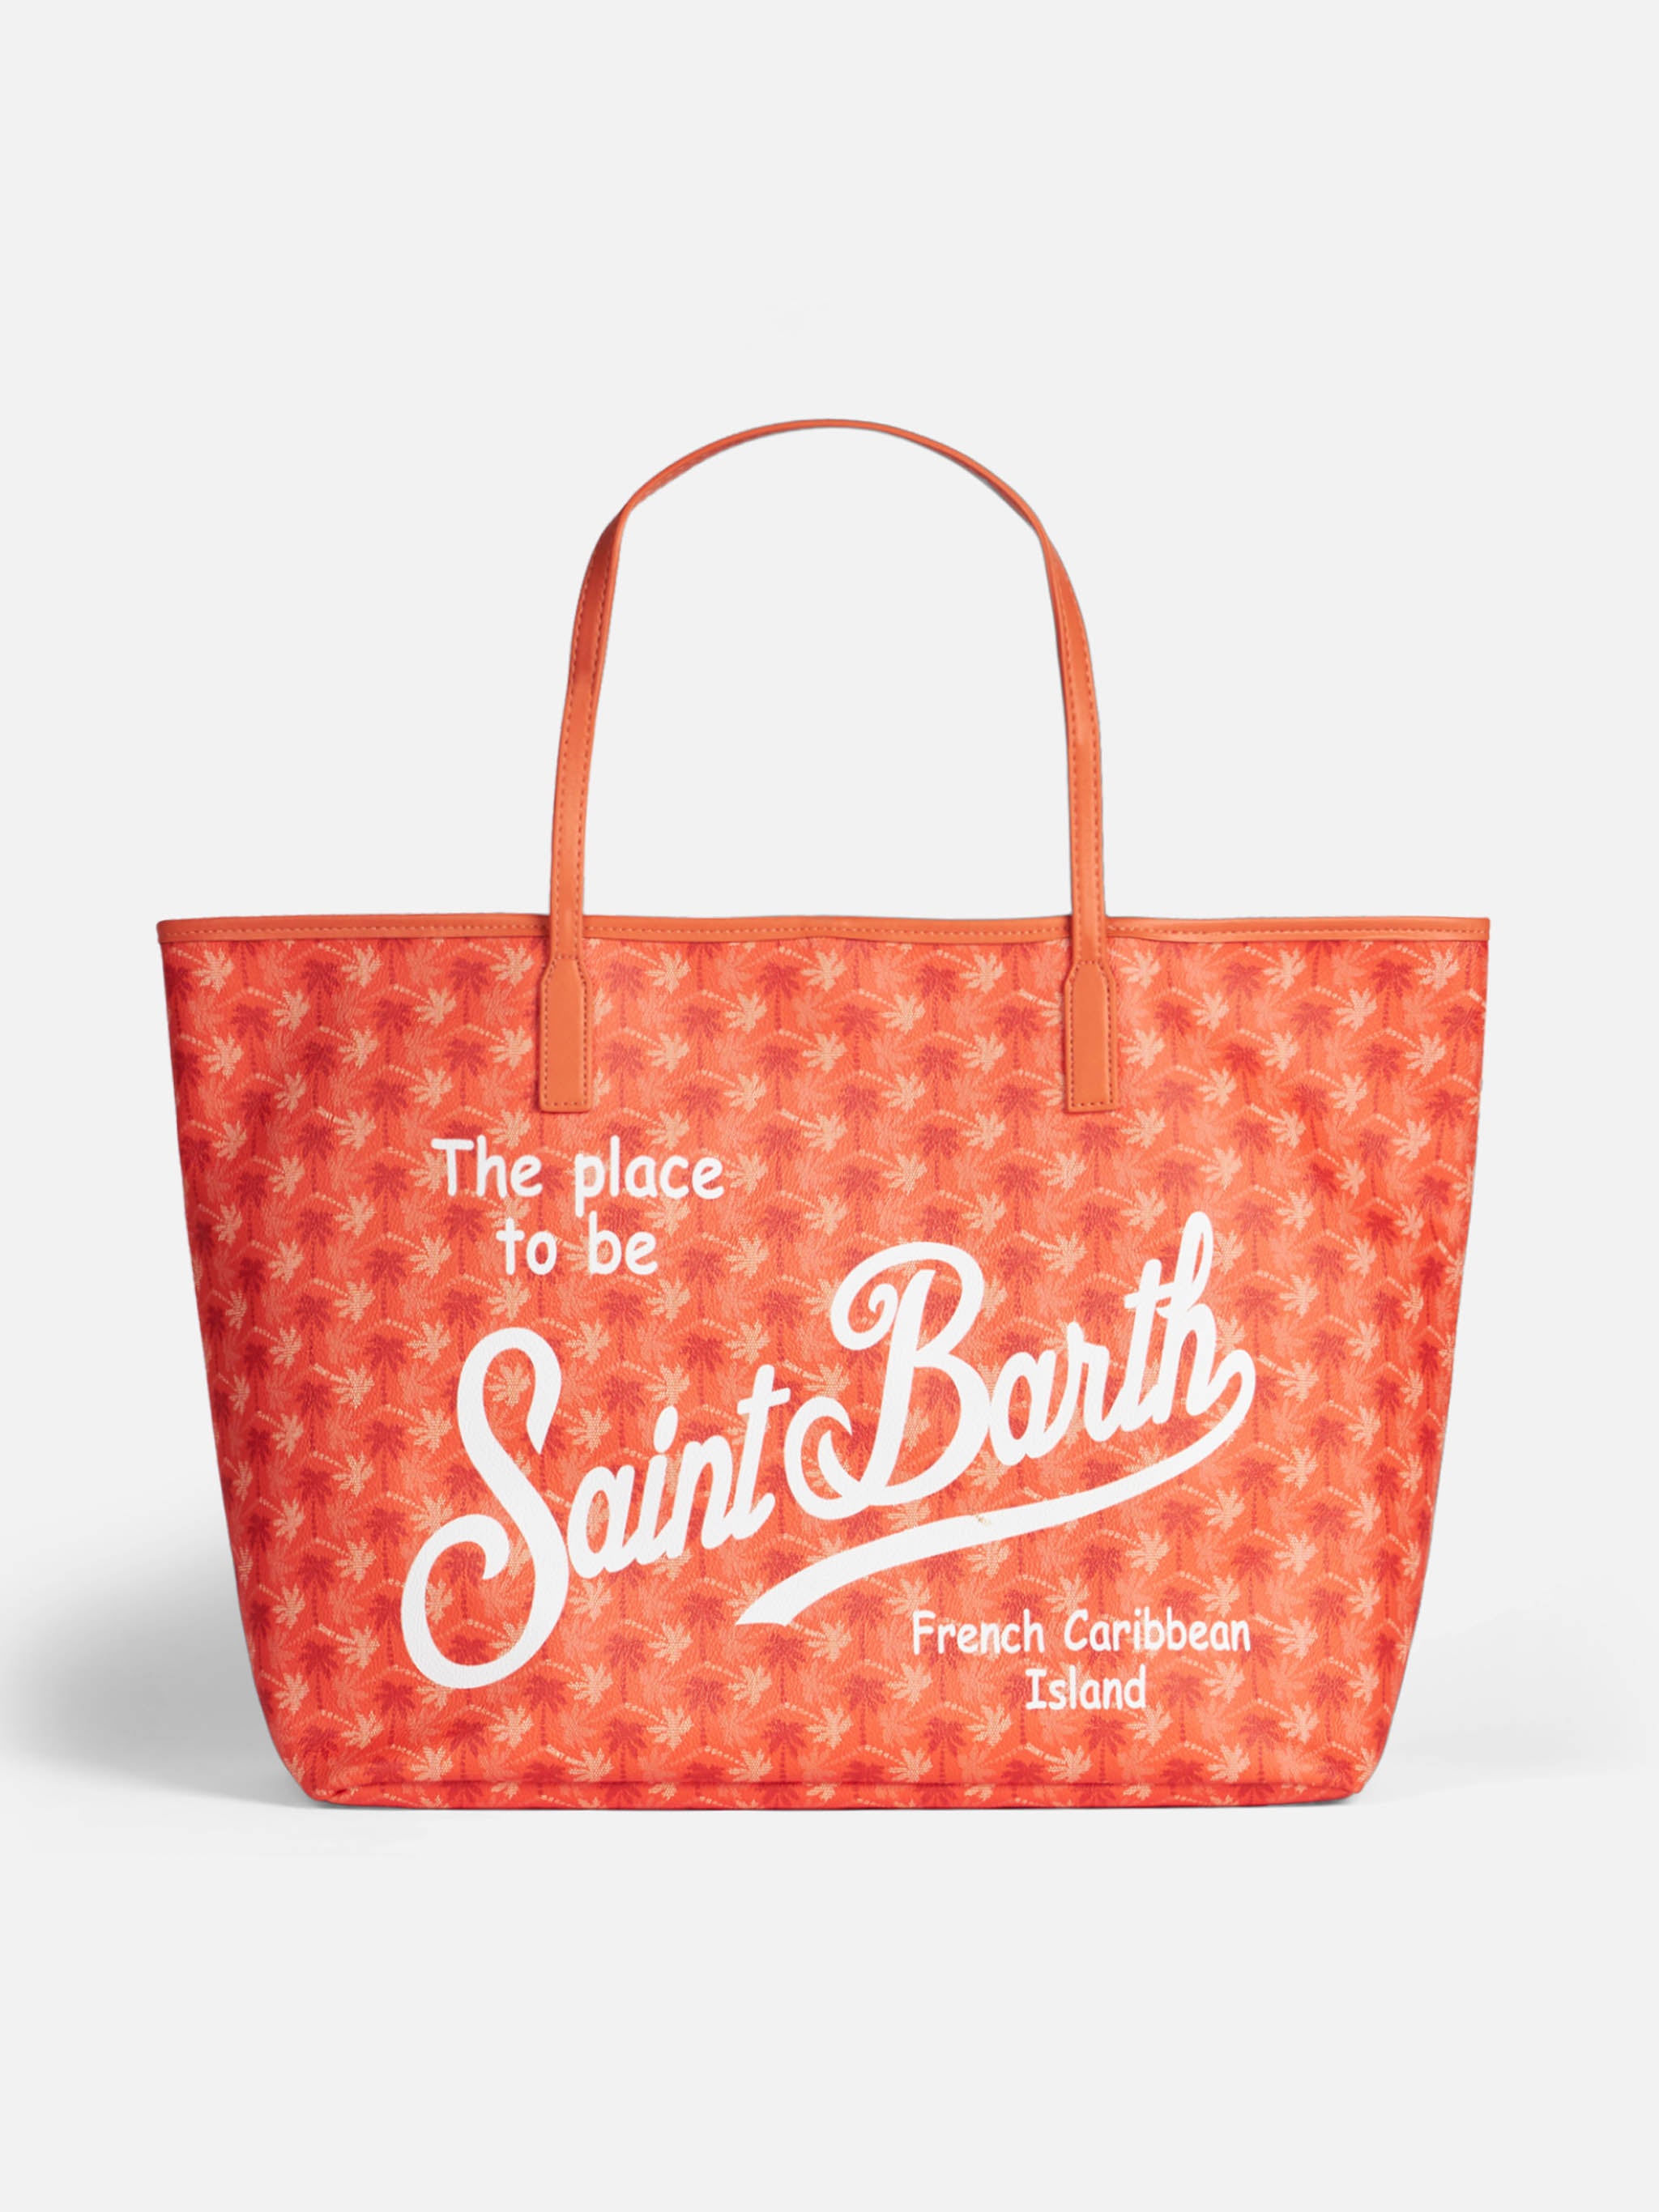 St Barth Beach Bag